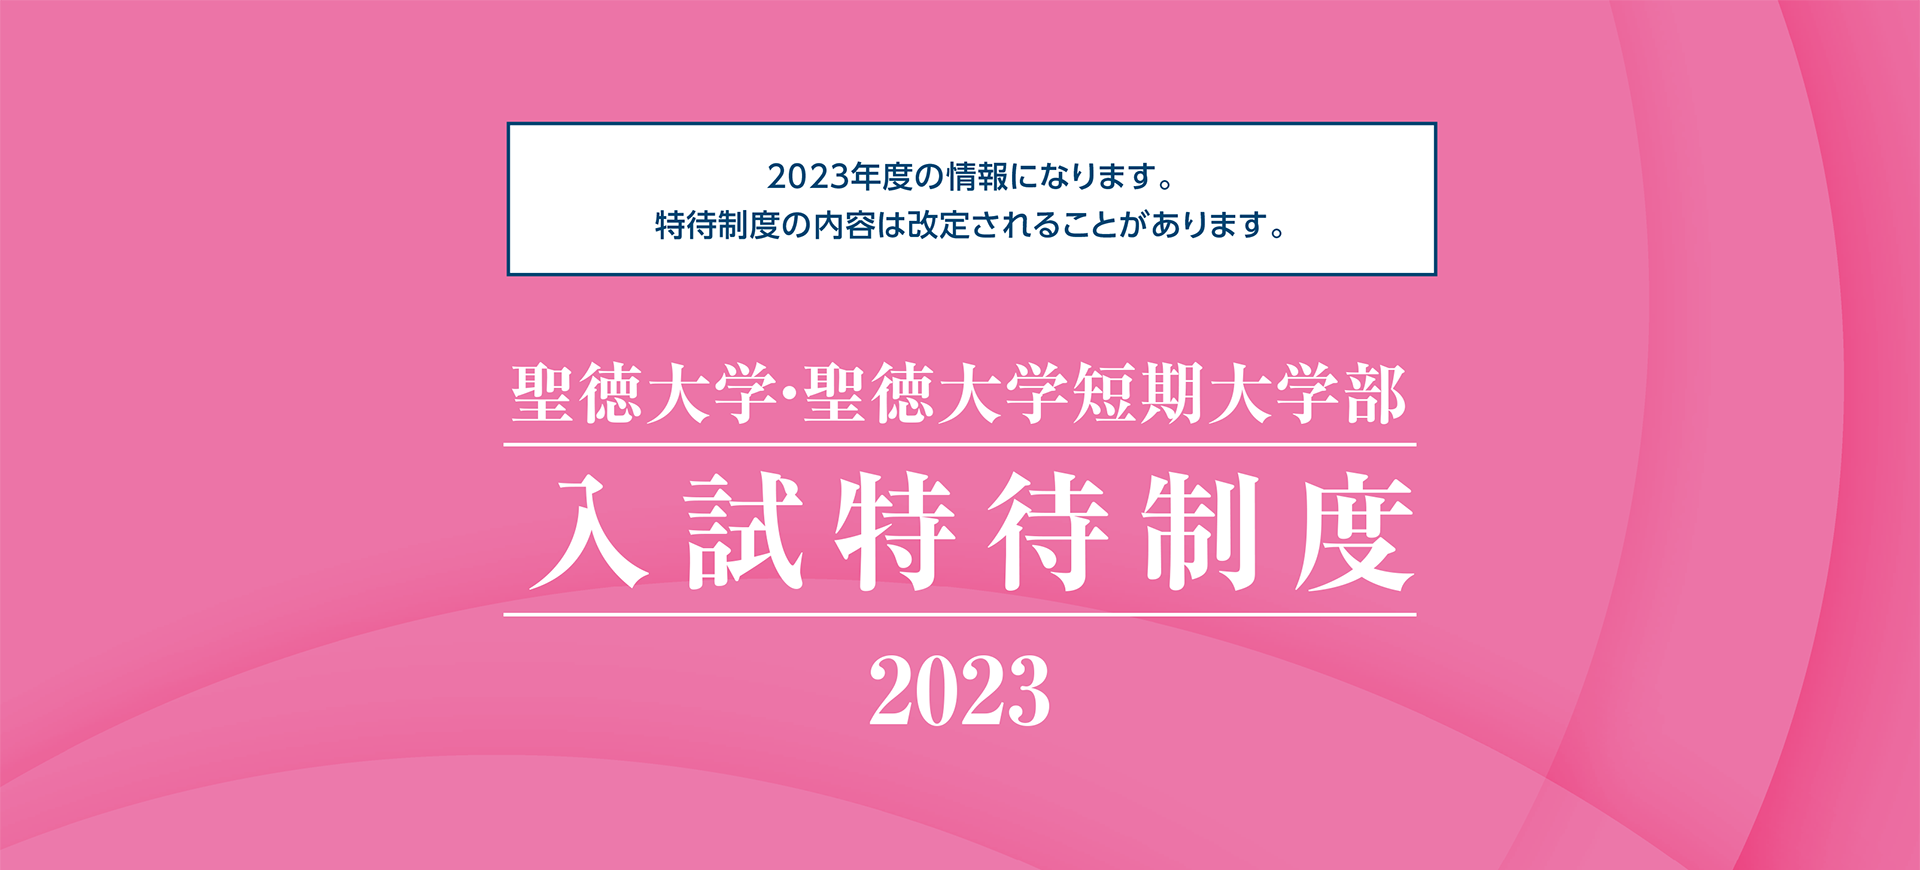 聖徳大学・聖徳大学短期大学部 入試特待制度 2023